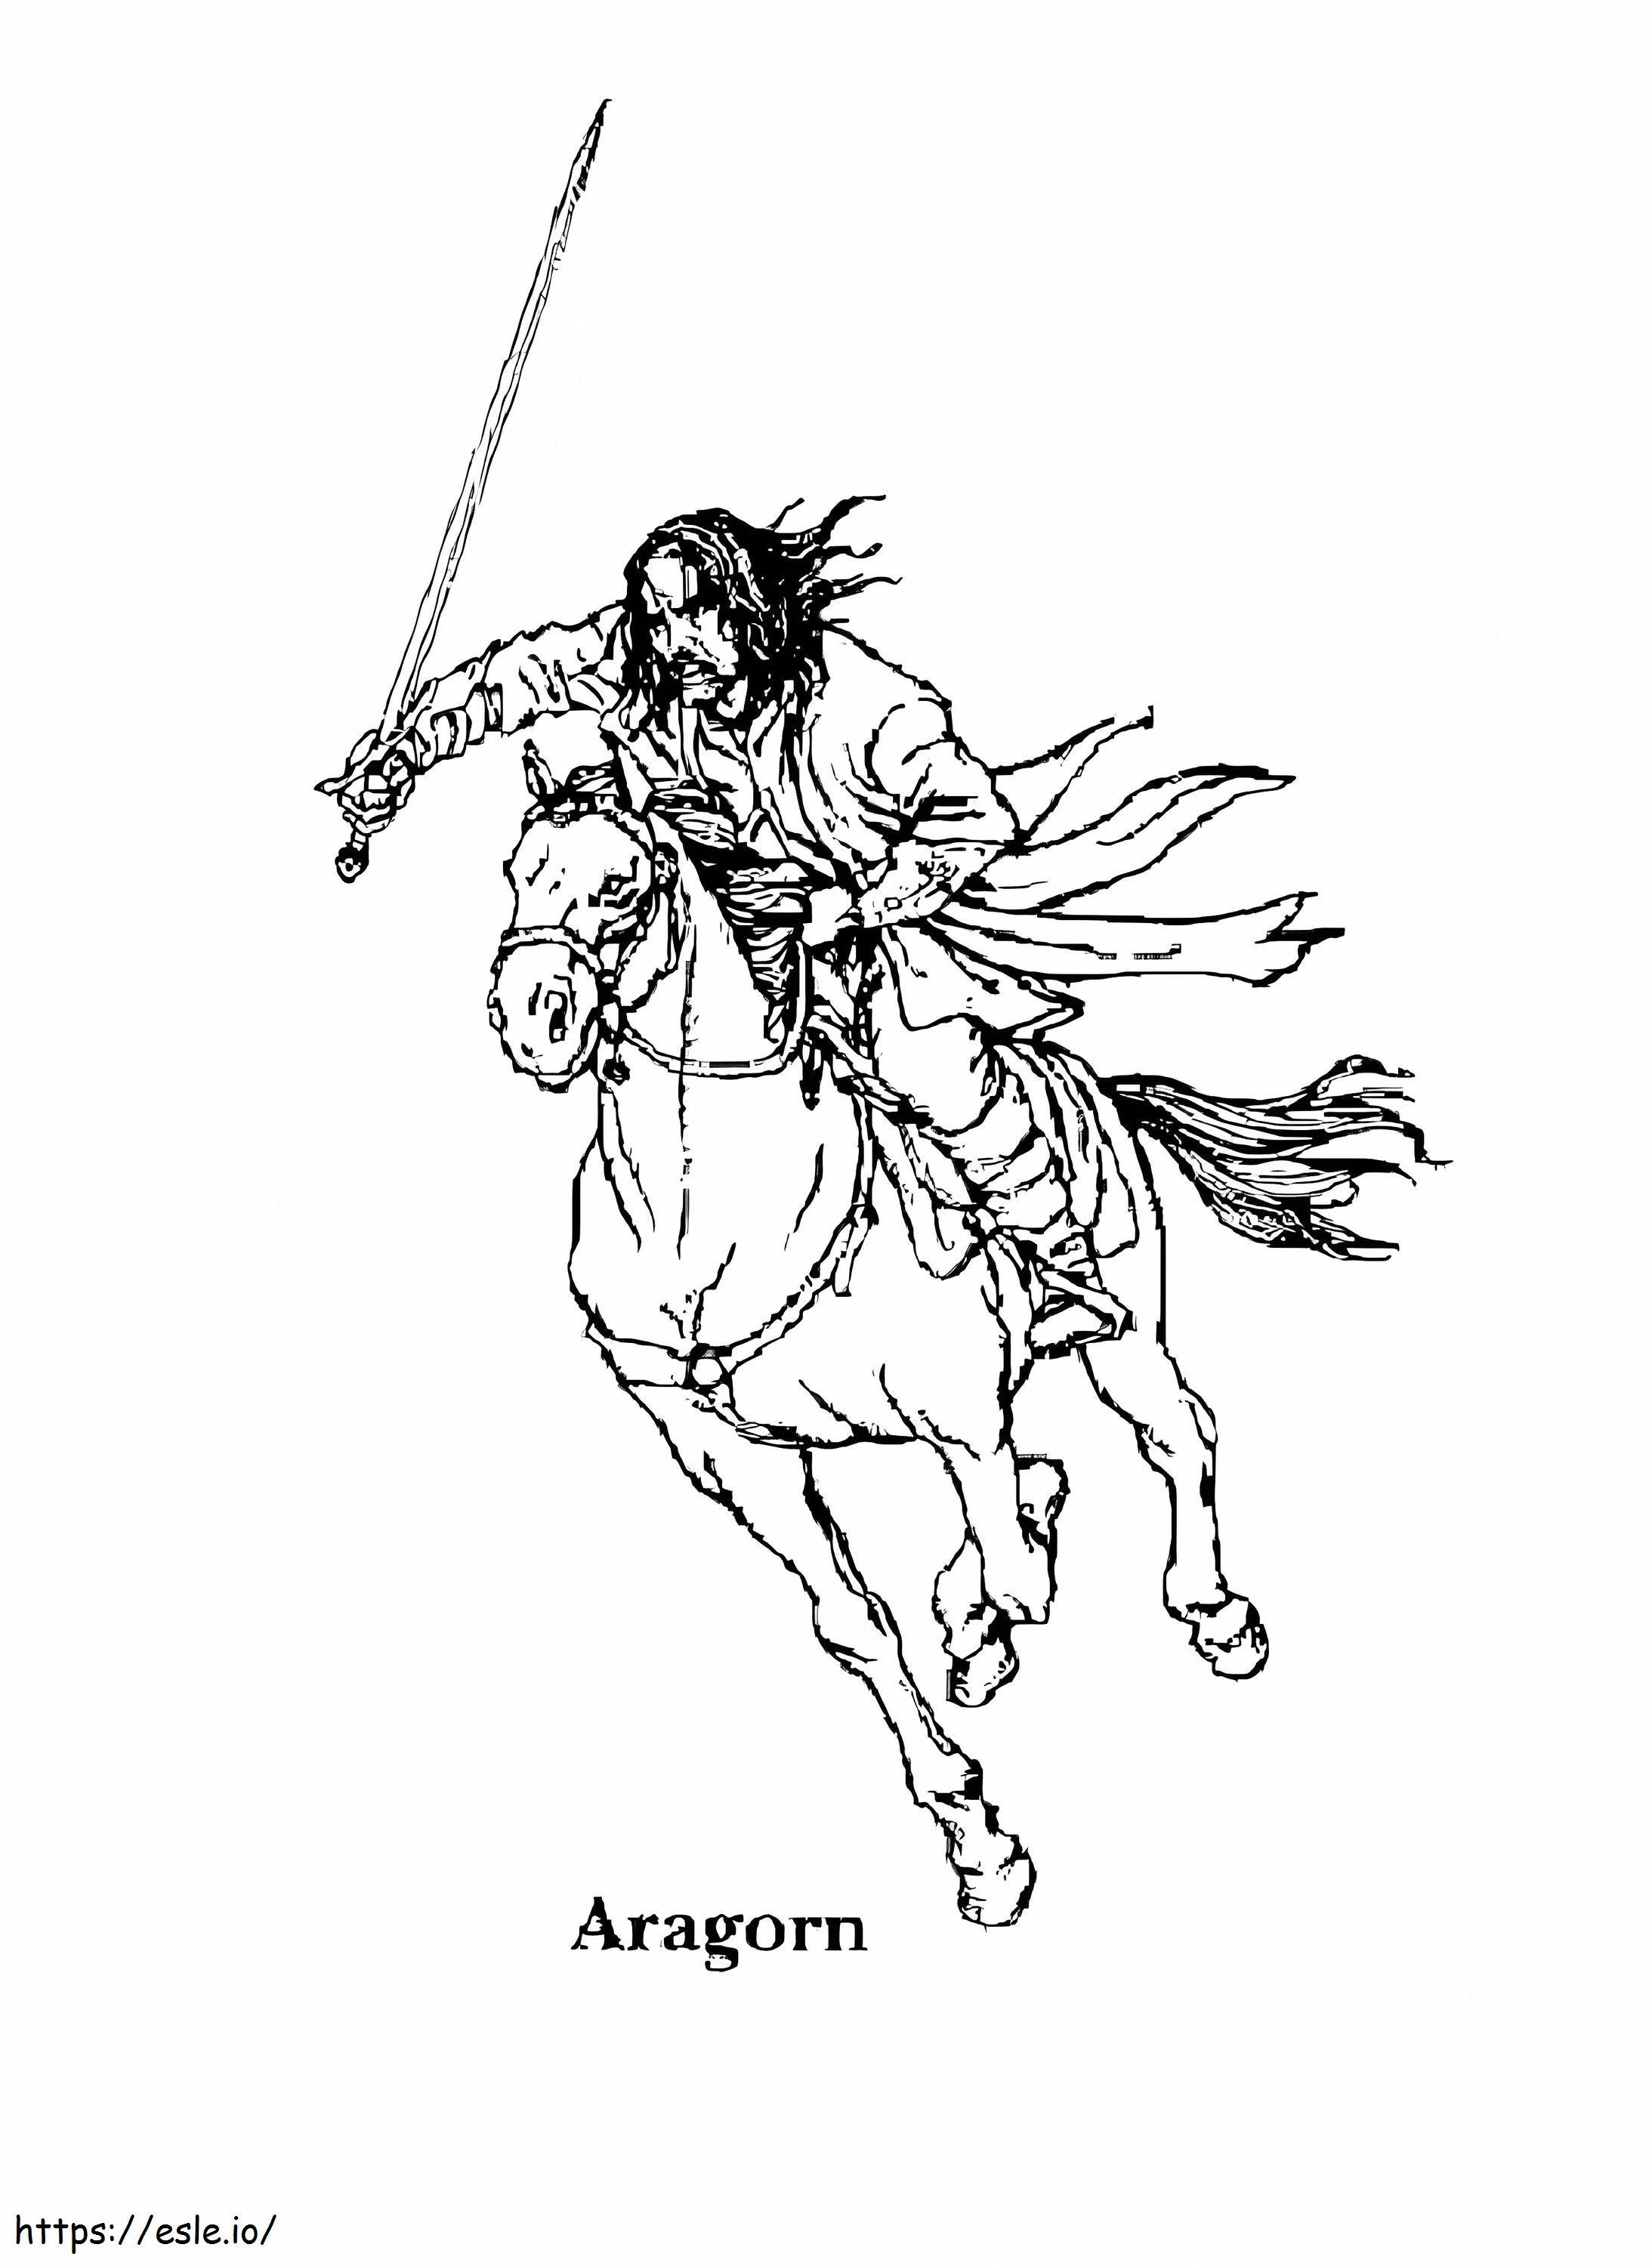 Cavalo de Cavalo Aragorn para colorir